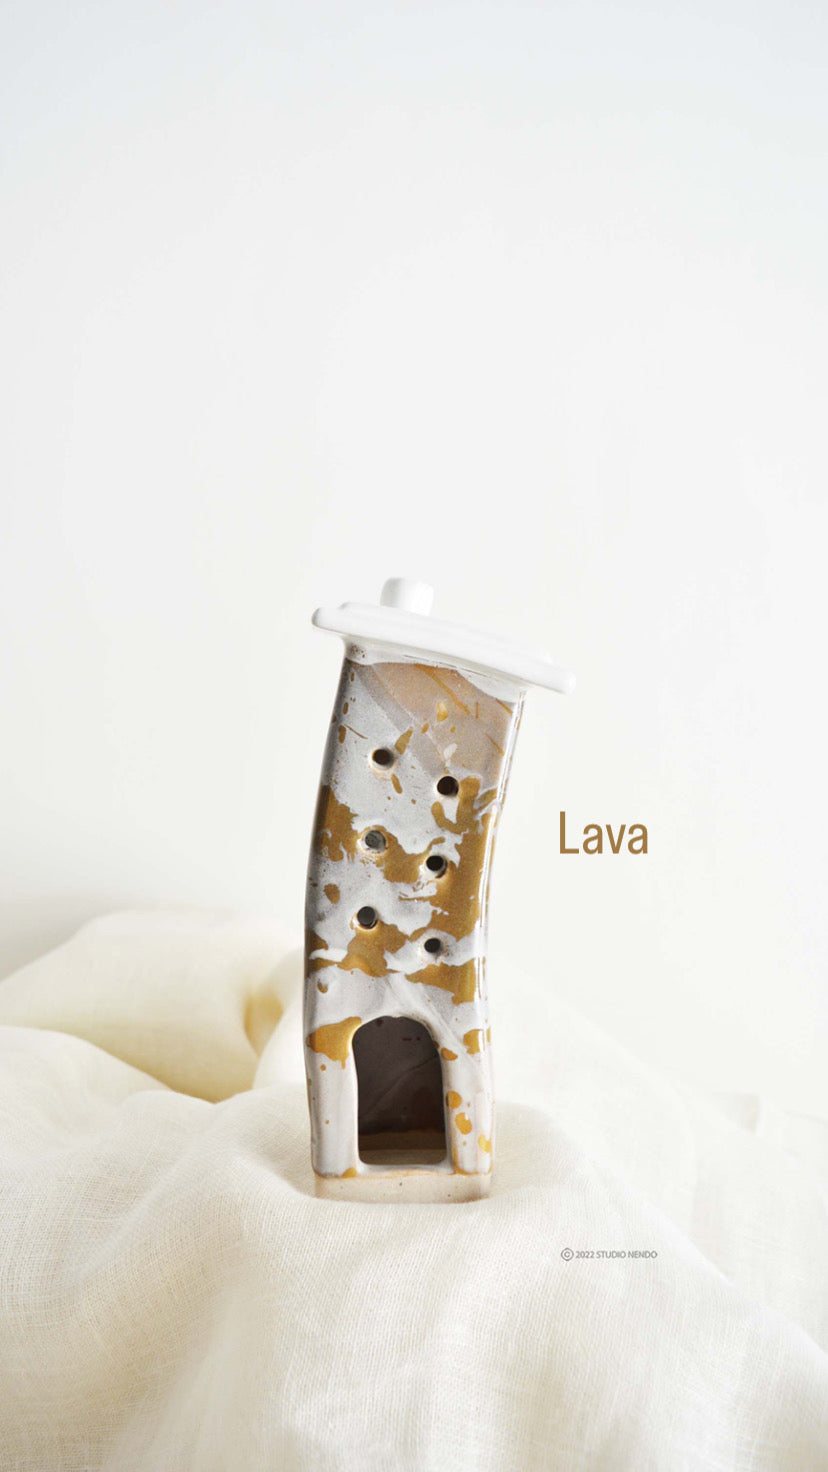 LAVA- Topsy Turvy Tealight Housing Society- Ceramic Sculpture